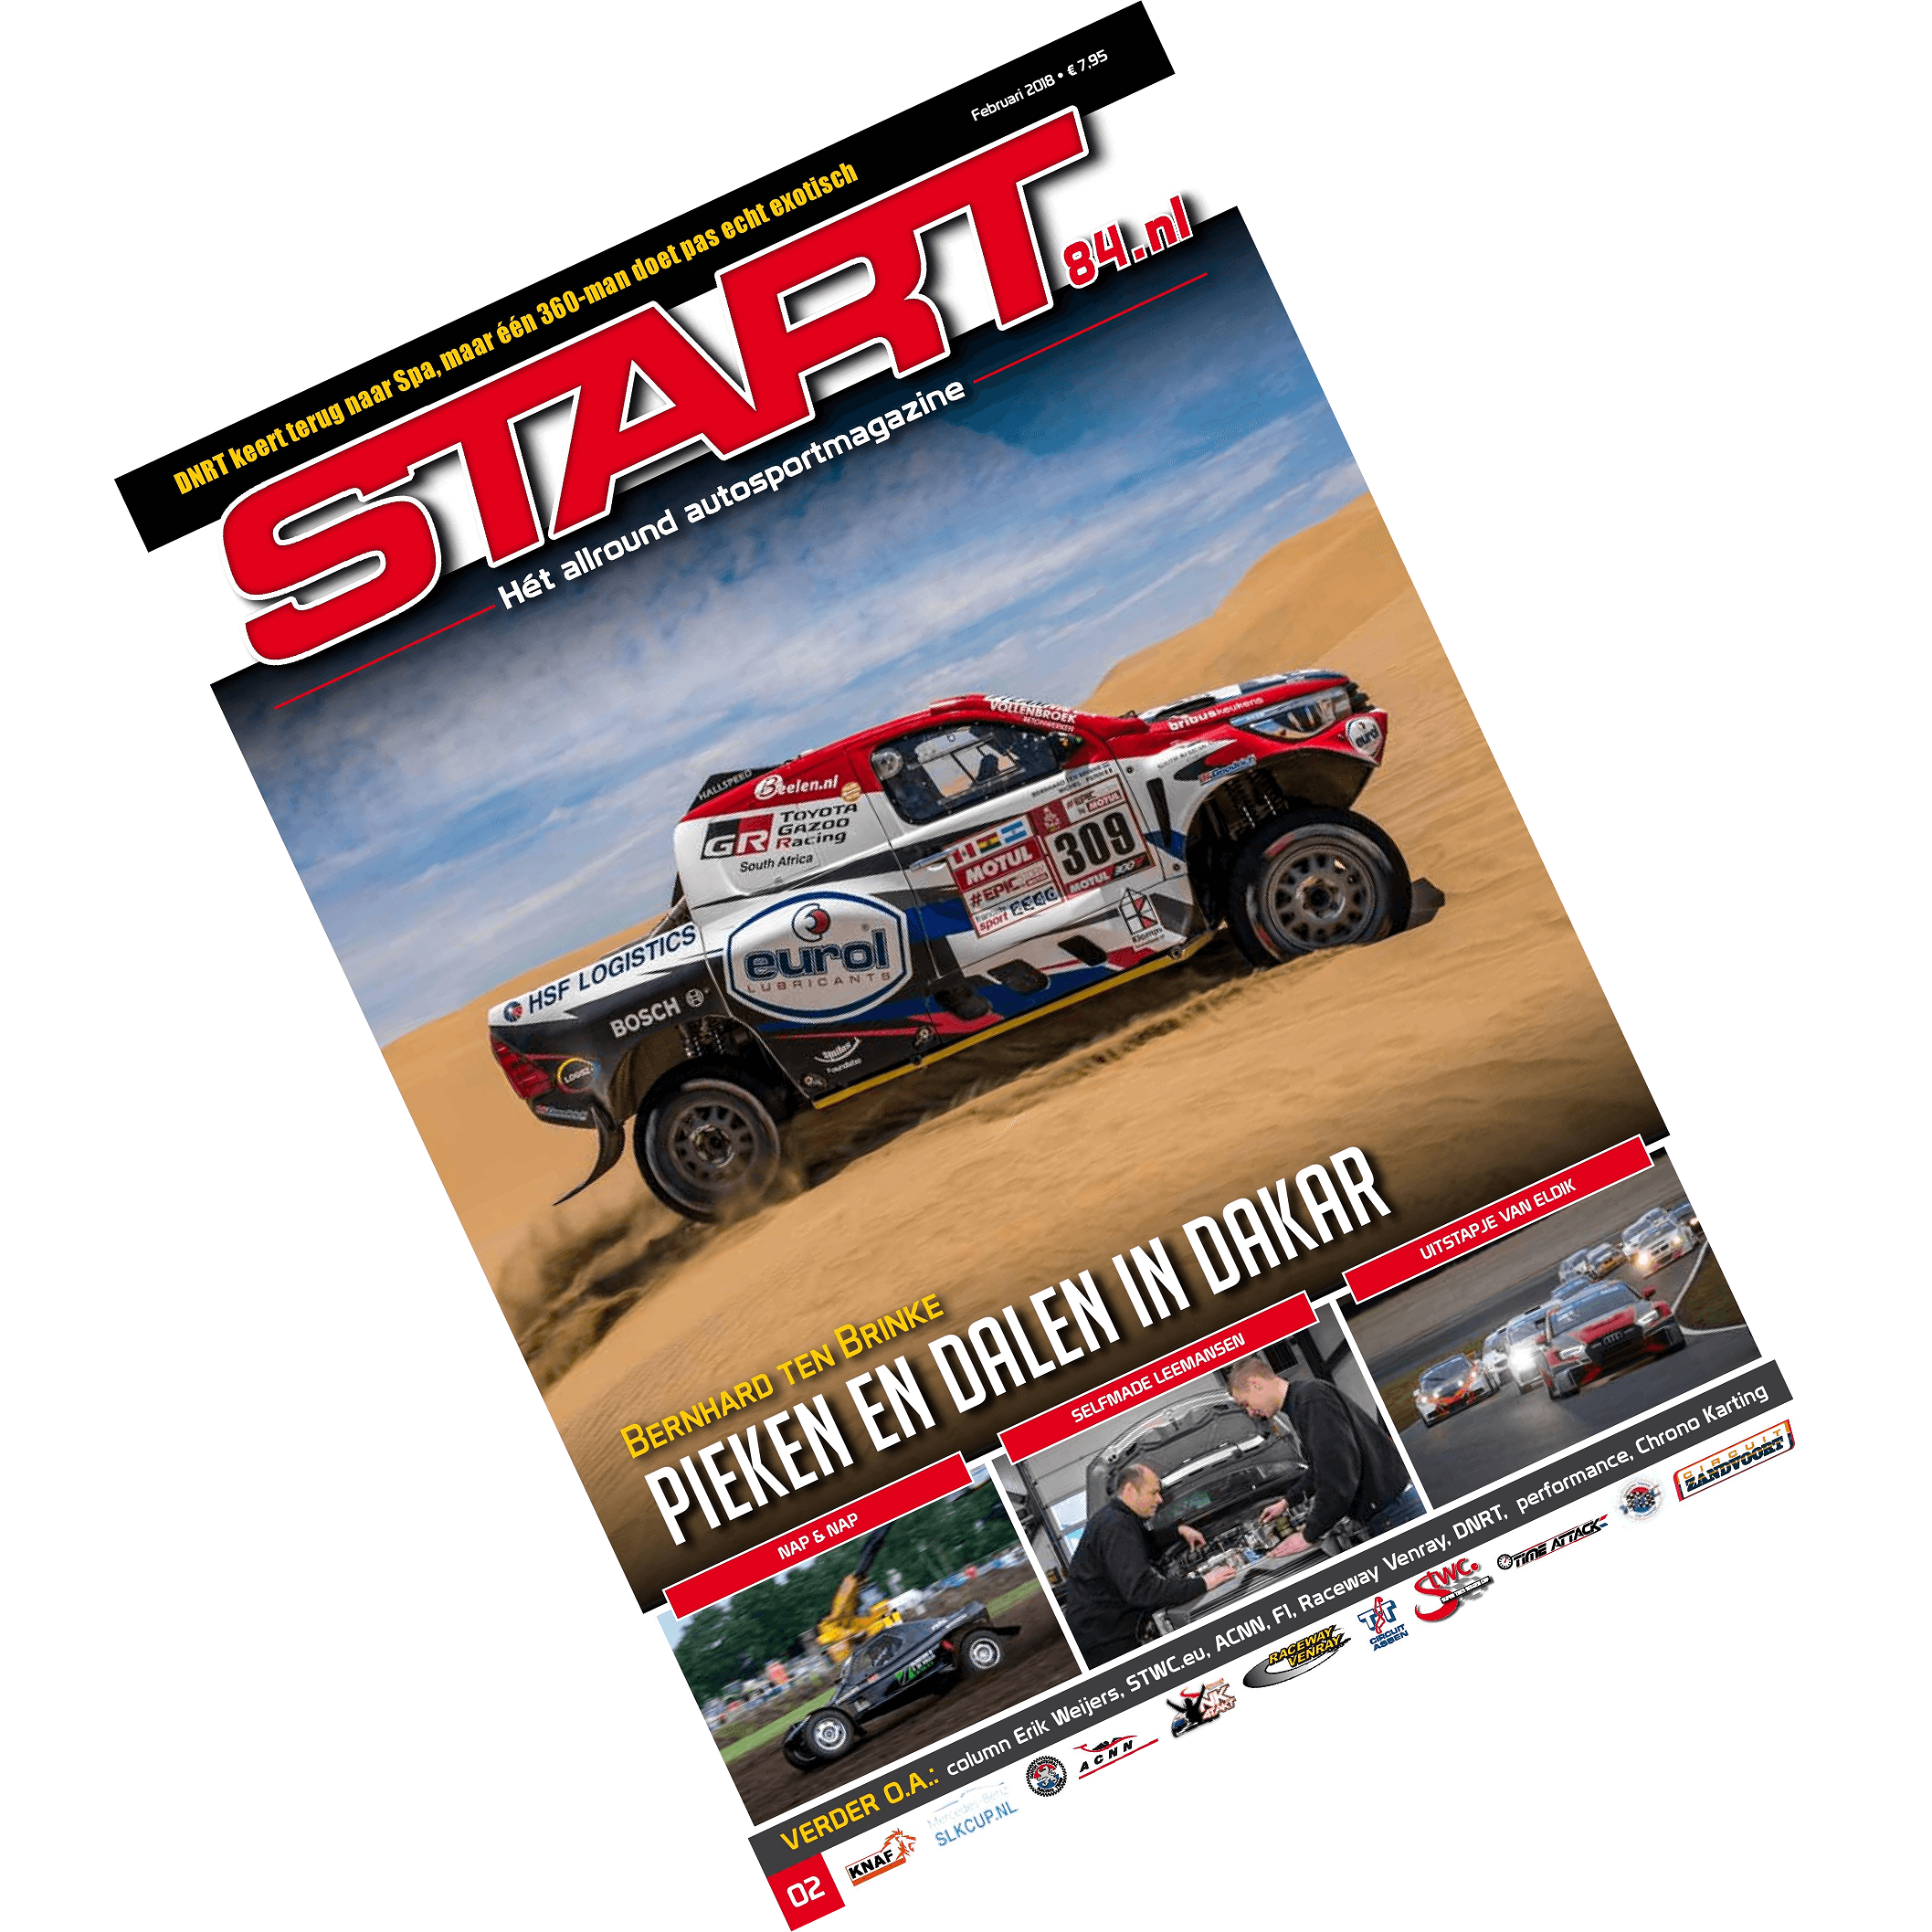 Cover van autosportmagazine Start 84 van februari 2018 met daarin bijdragen van Ralph Stoove